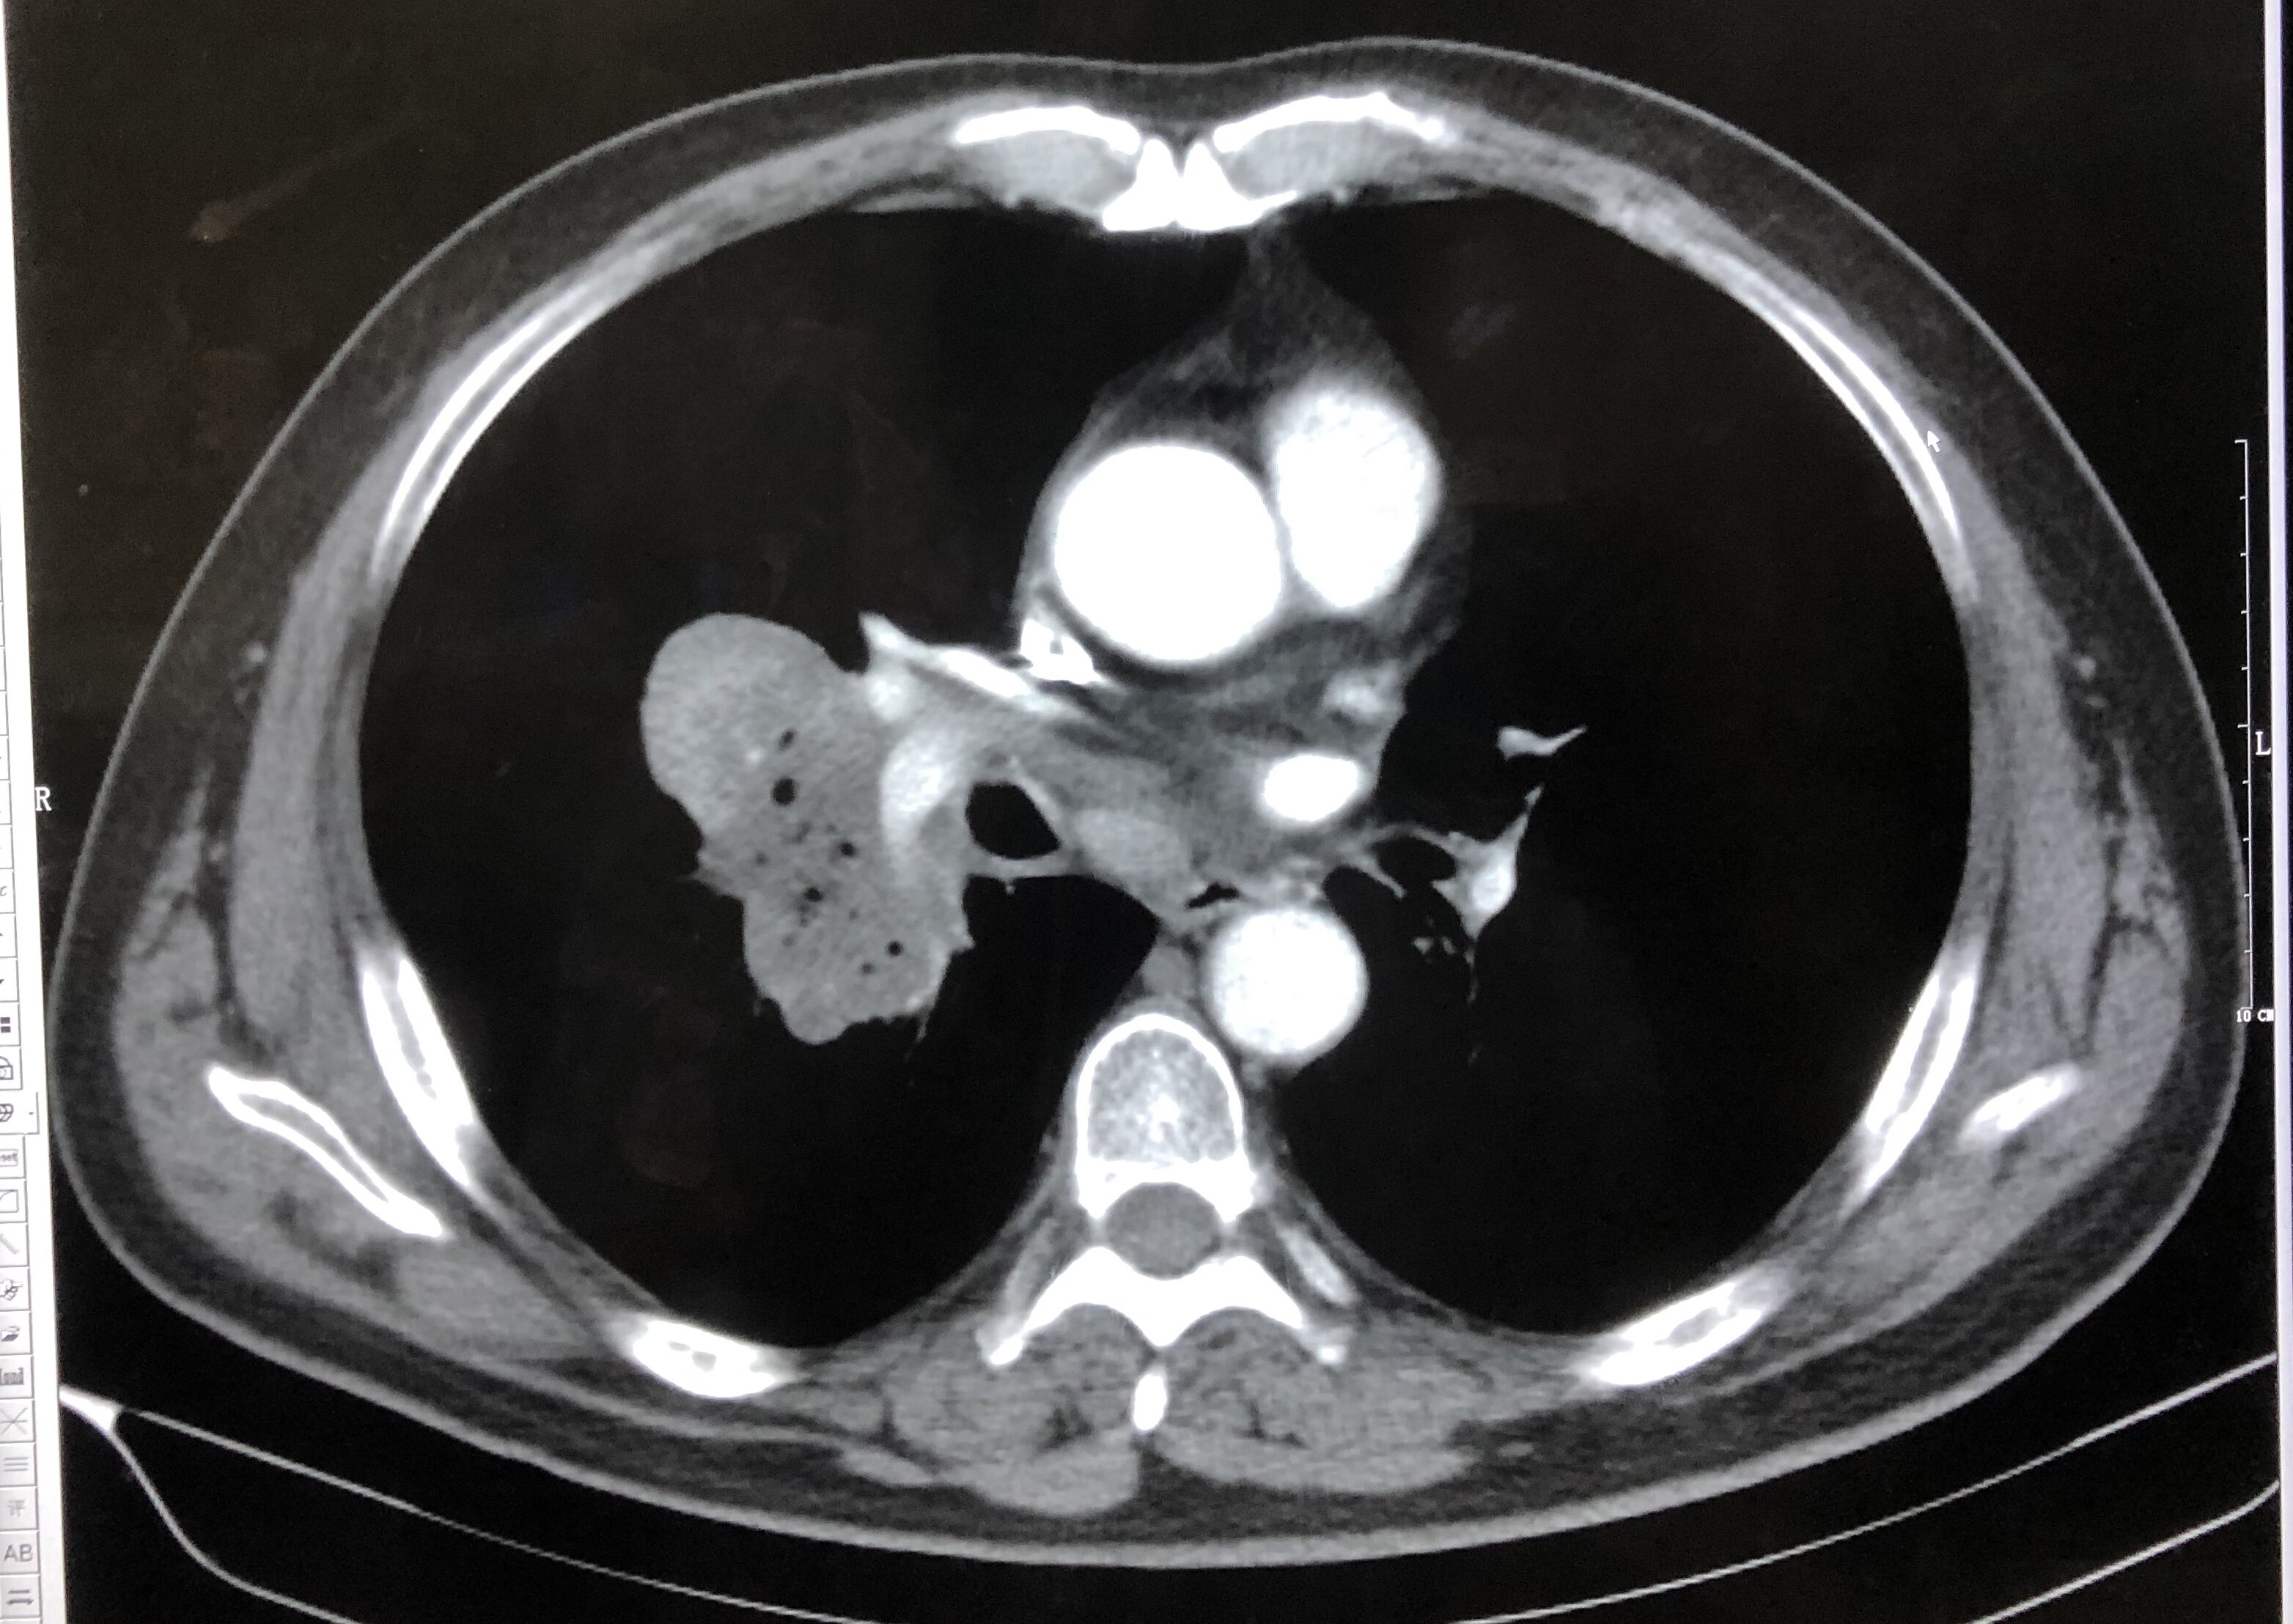 中央型肺癌ct影像图片图片